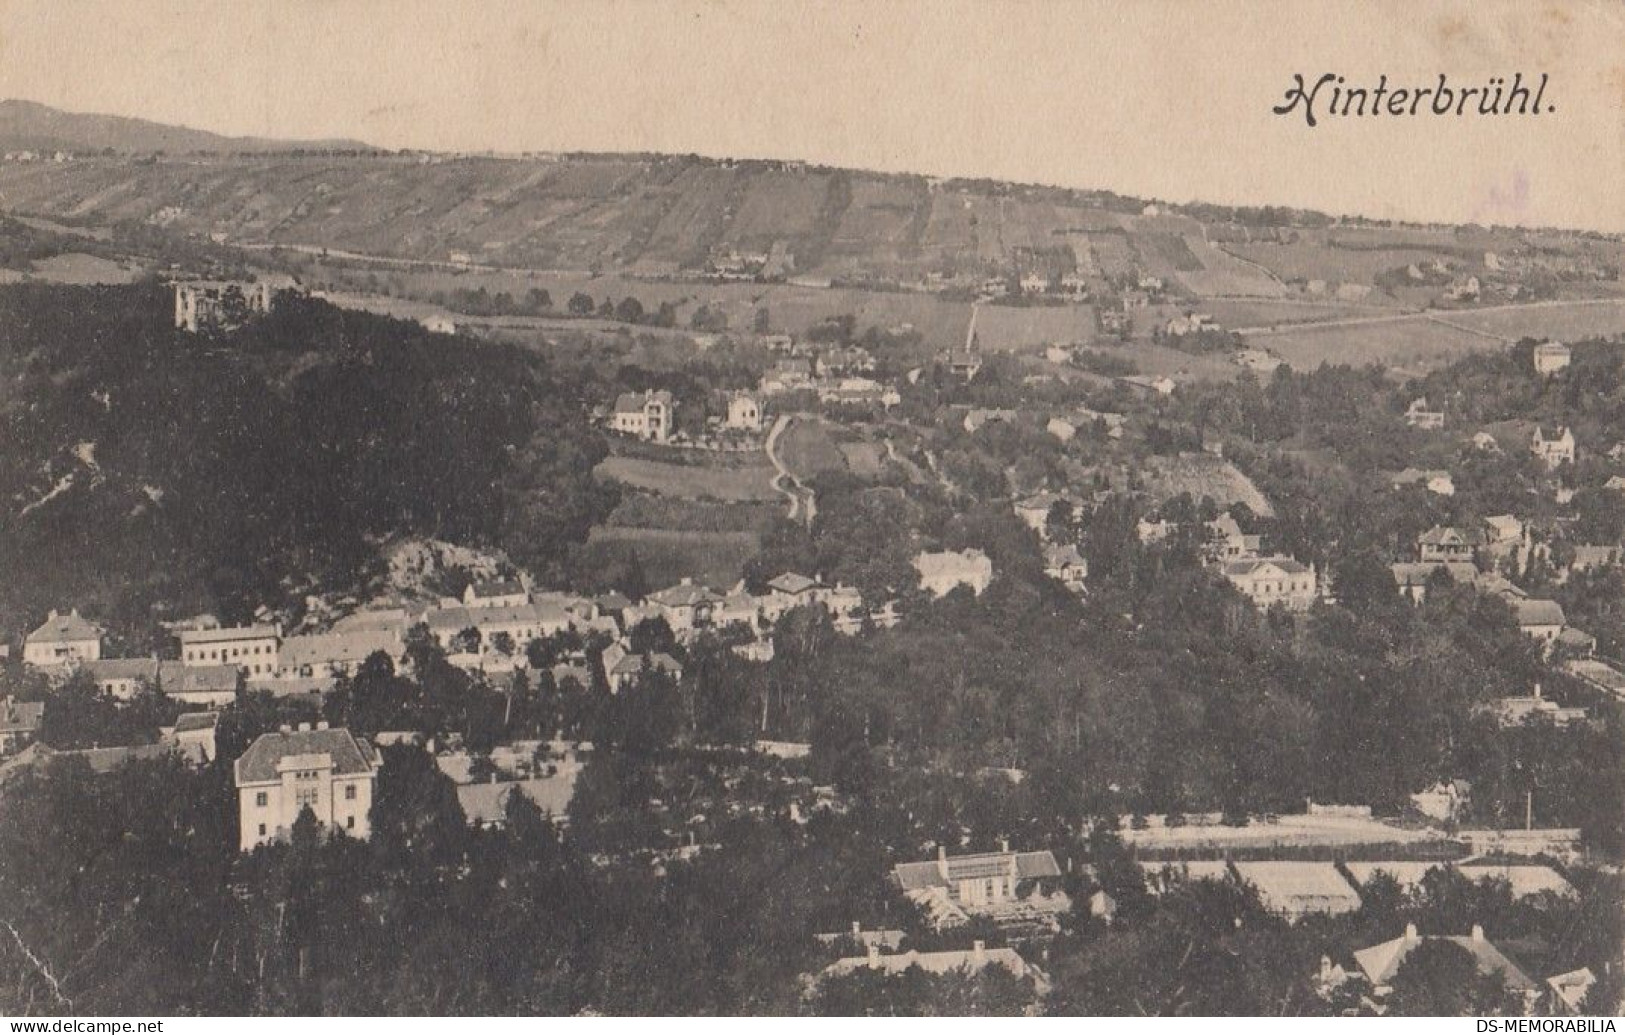 Hinterbruhl 1911 - Mödling